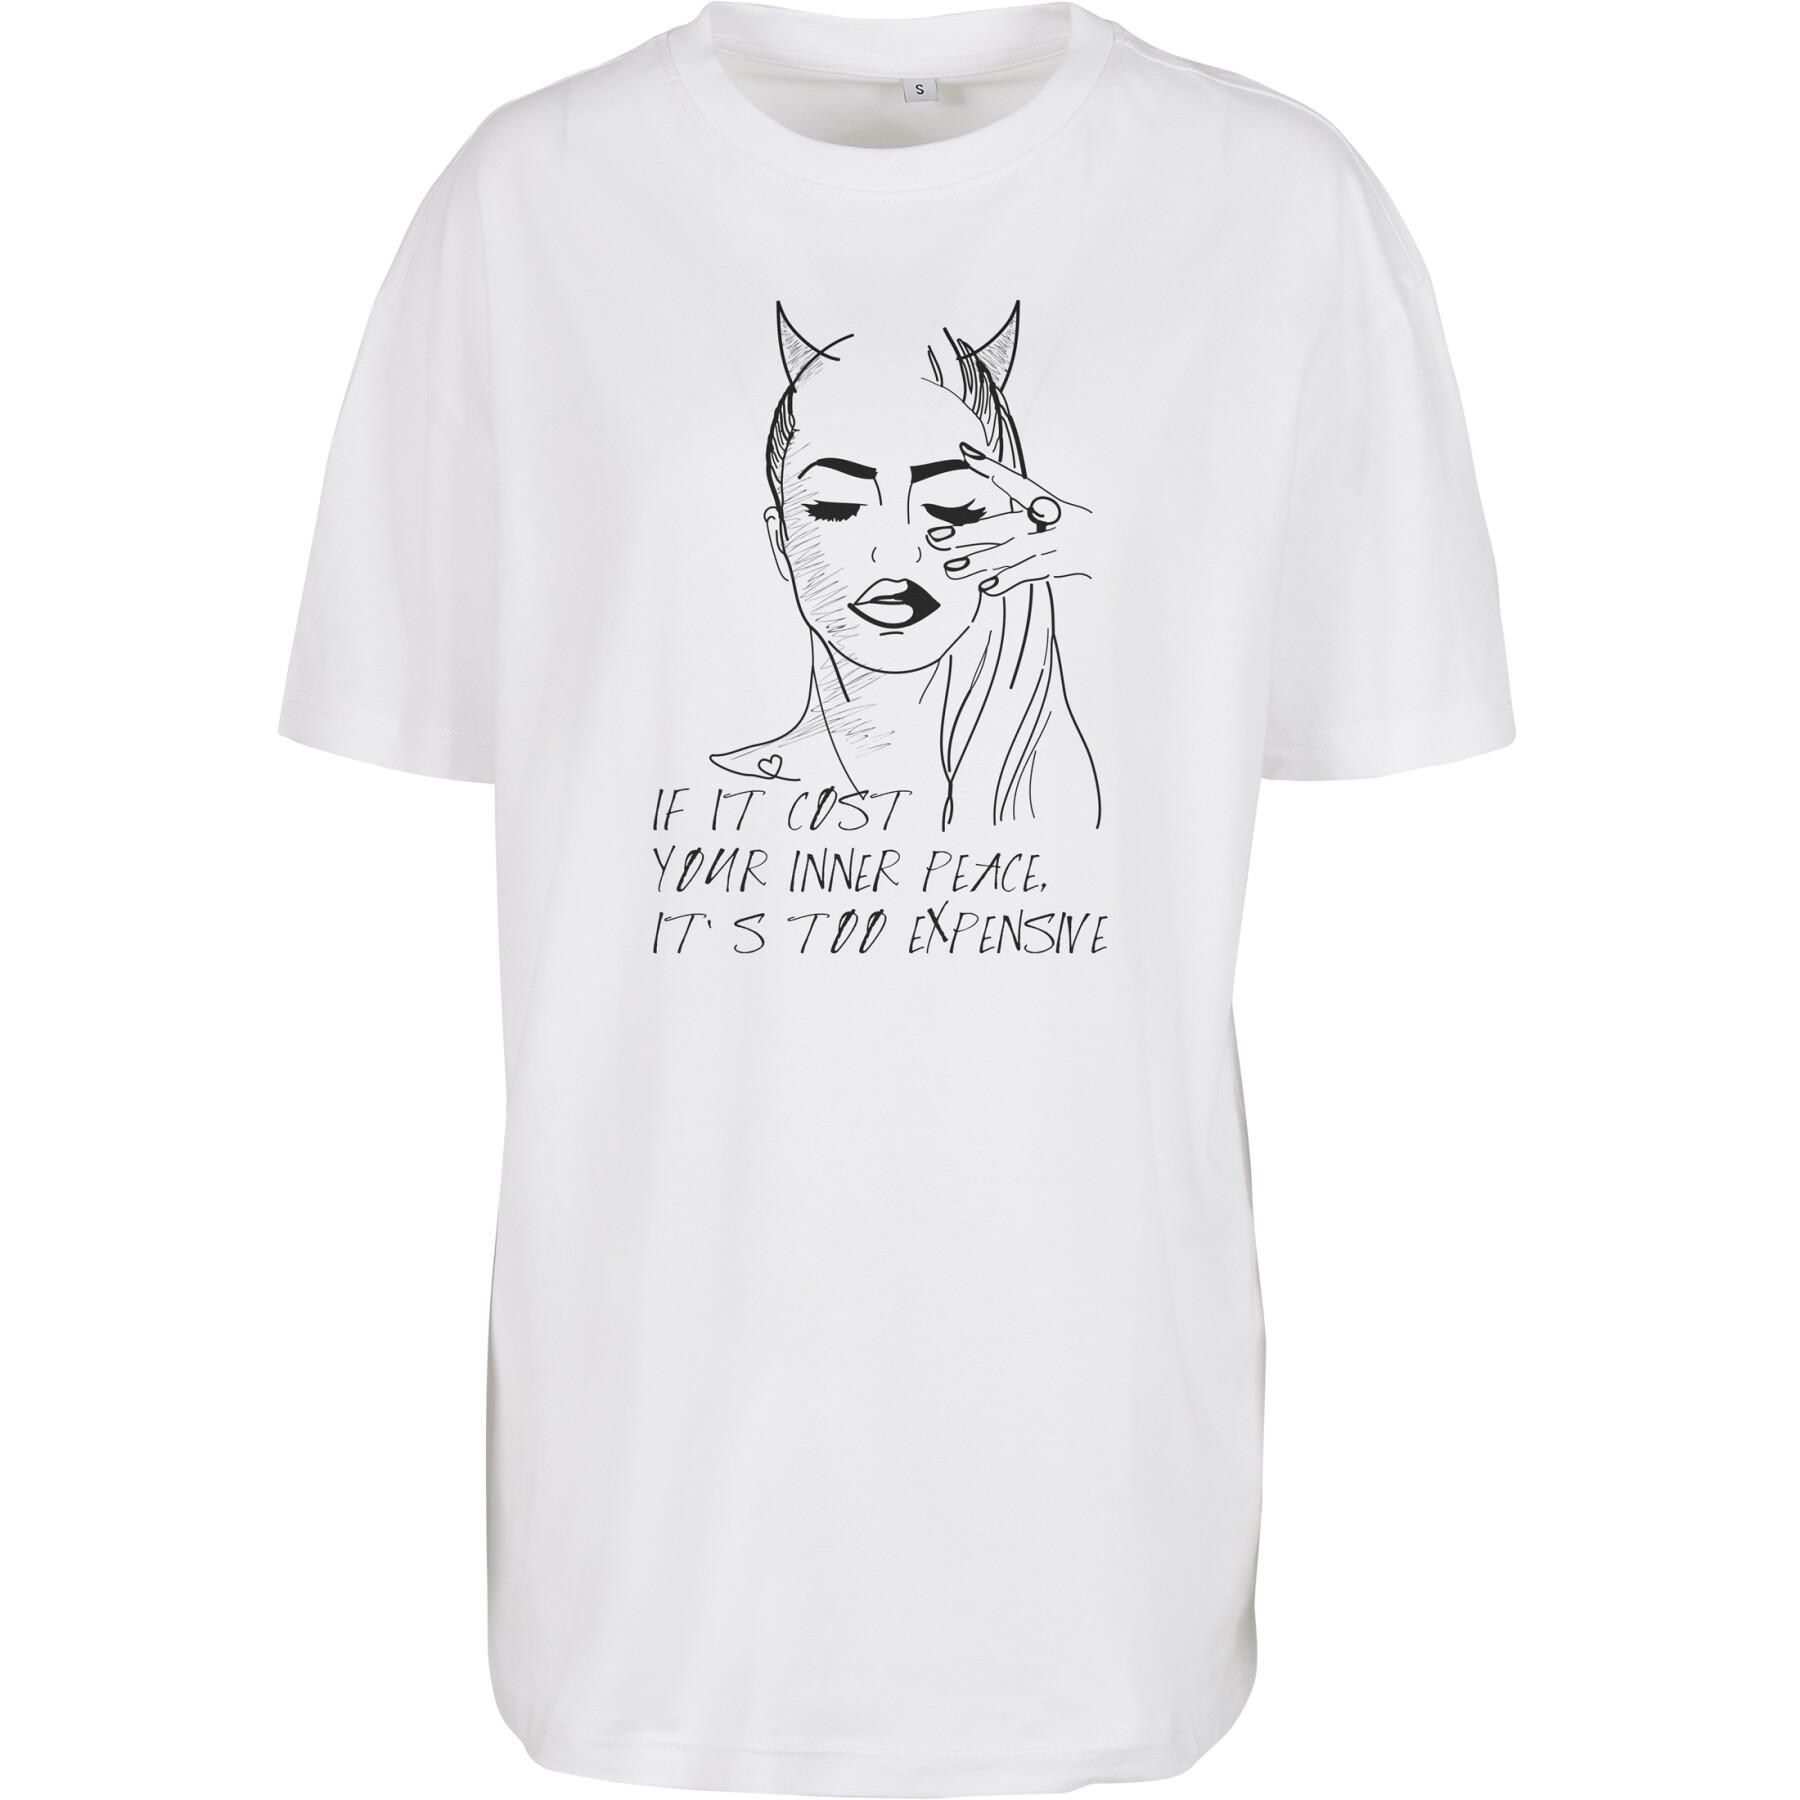 T-shirt för kvinnor Mister Tee ladies inner peace sign